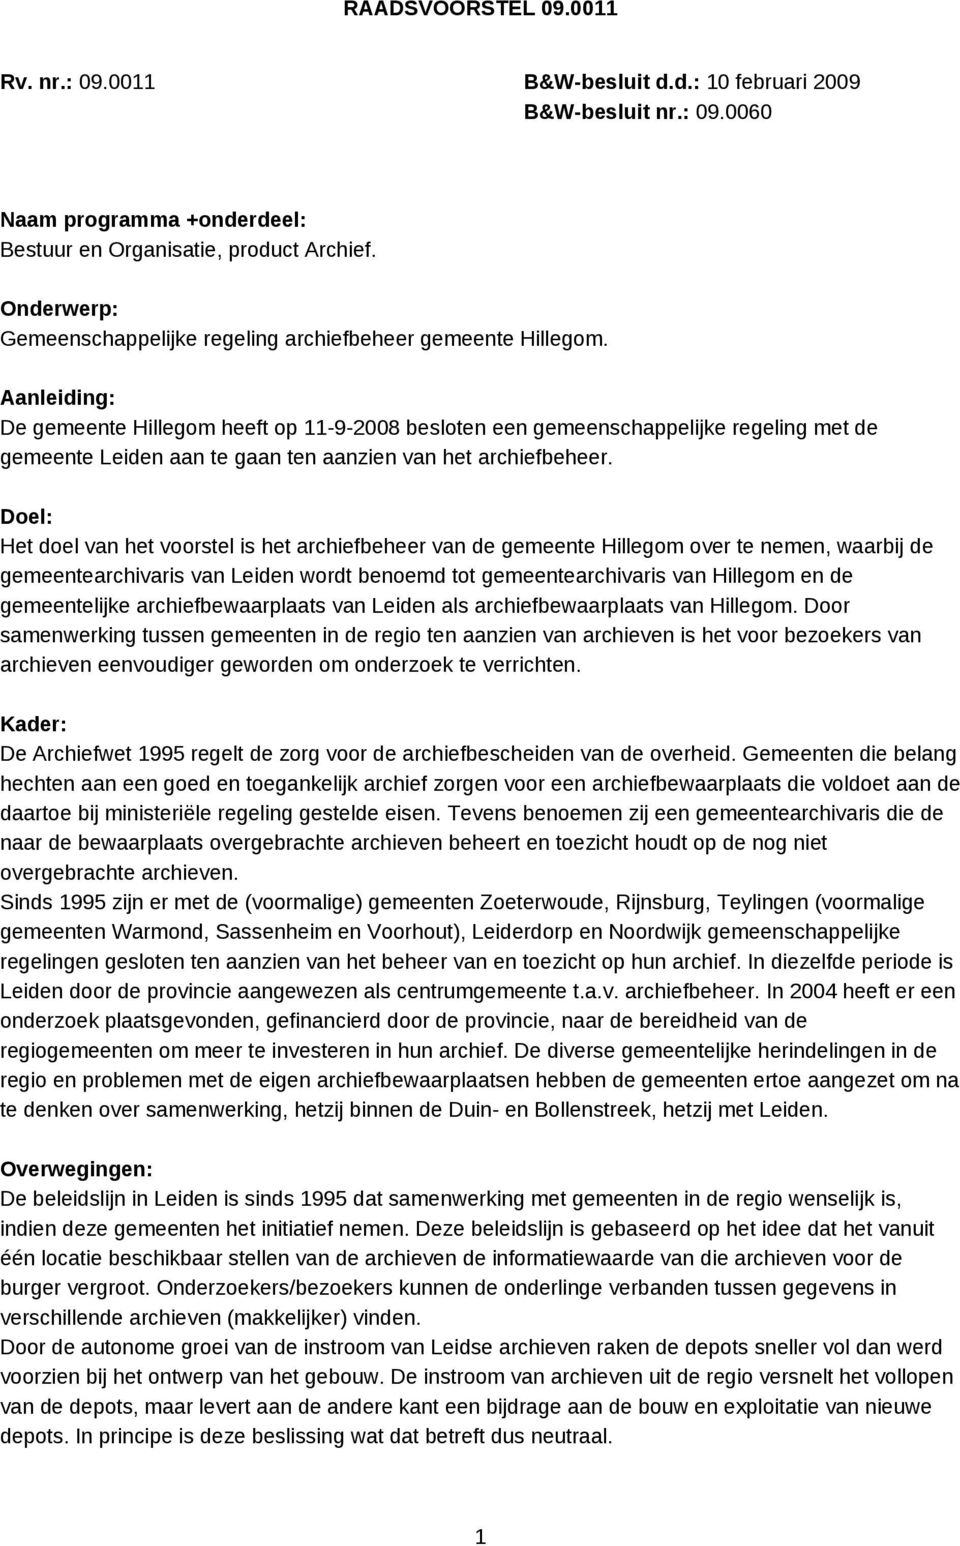 Aanleiding: De gemeente Hillegom heeft op 11-9-2008 besloten een gemeenschappelijke regeling met de gemeente Leiden aan te gaan ten aanzien van het archiefbeheer.